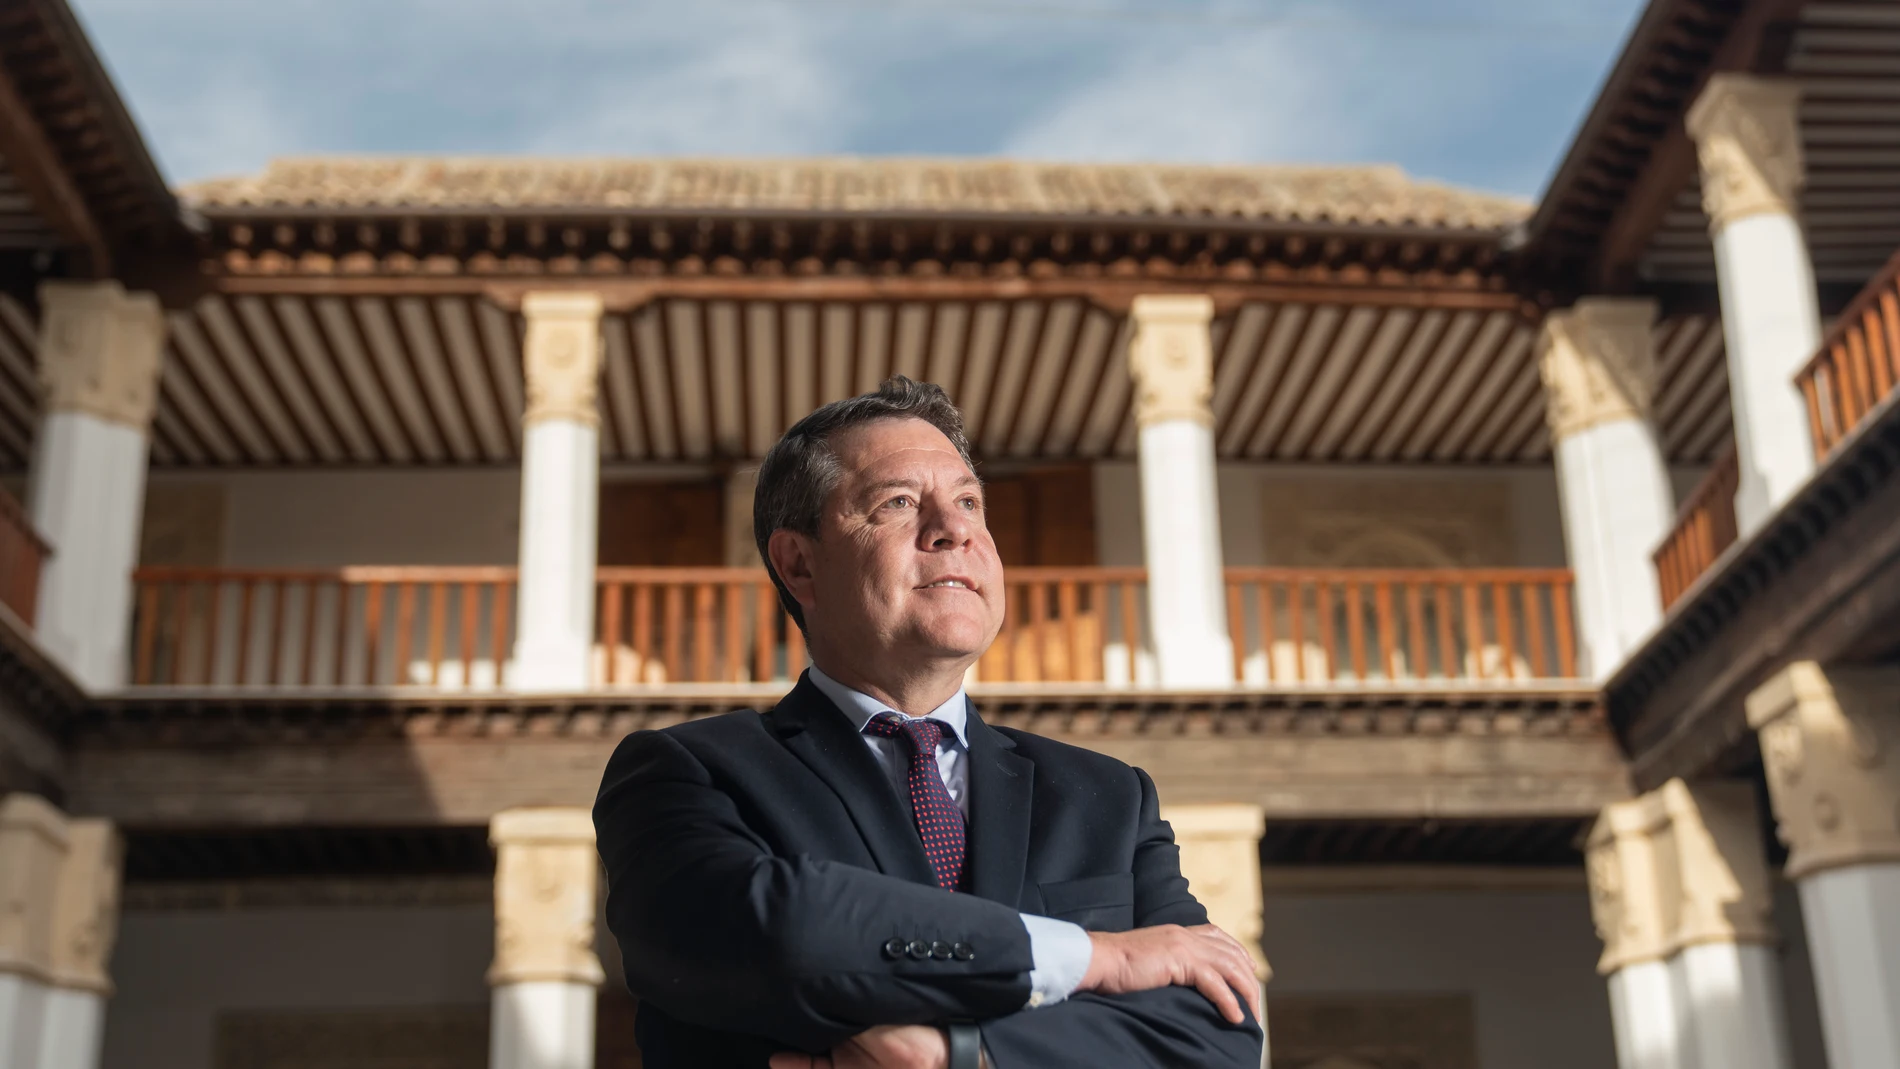 Entrevista a Emiliano García-Page en el Palacio de Fuensalida, Toledo David Jar